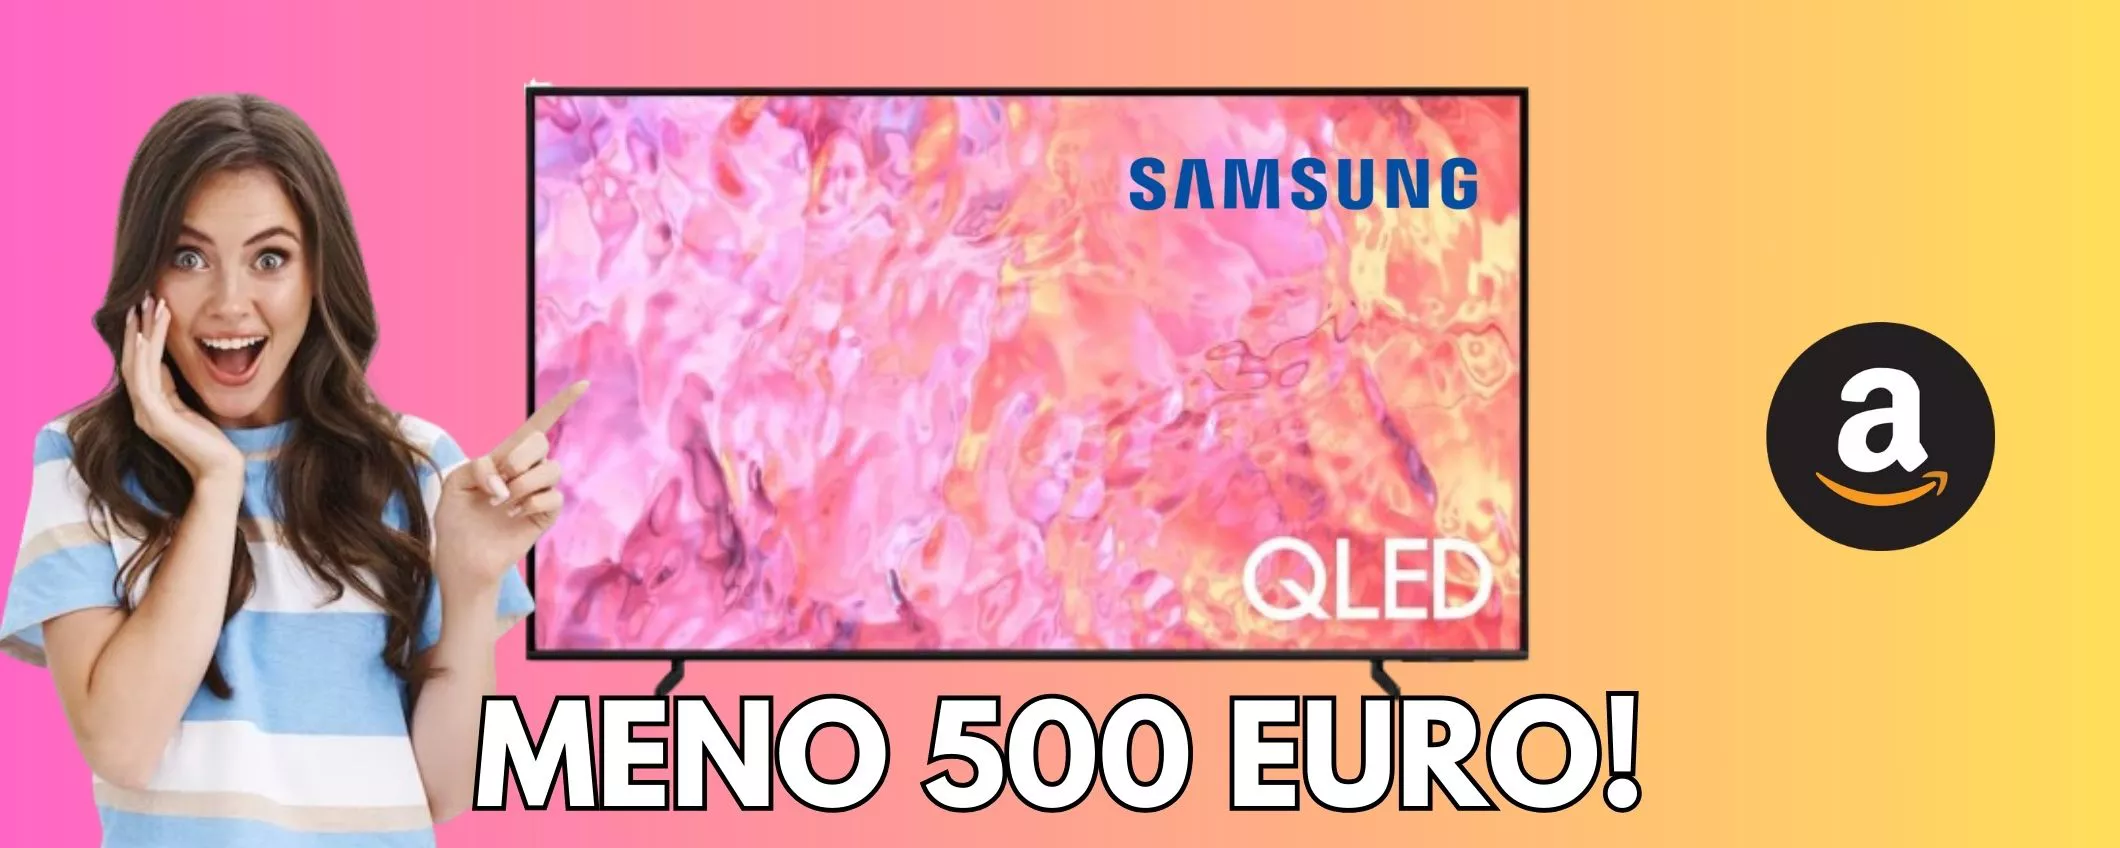 Samsung Smart TV 65 pollici, il prezzo crolla, sconto esagerato MENO 500 euro!